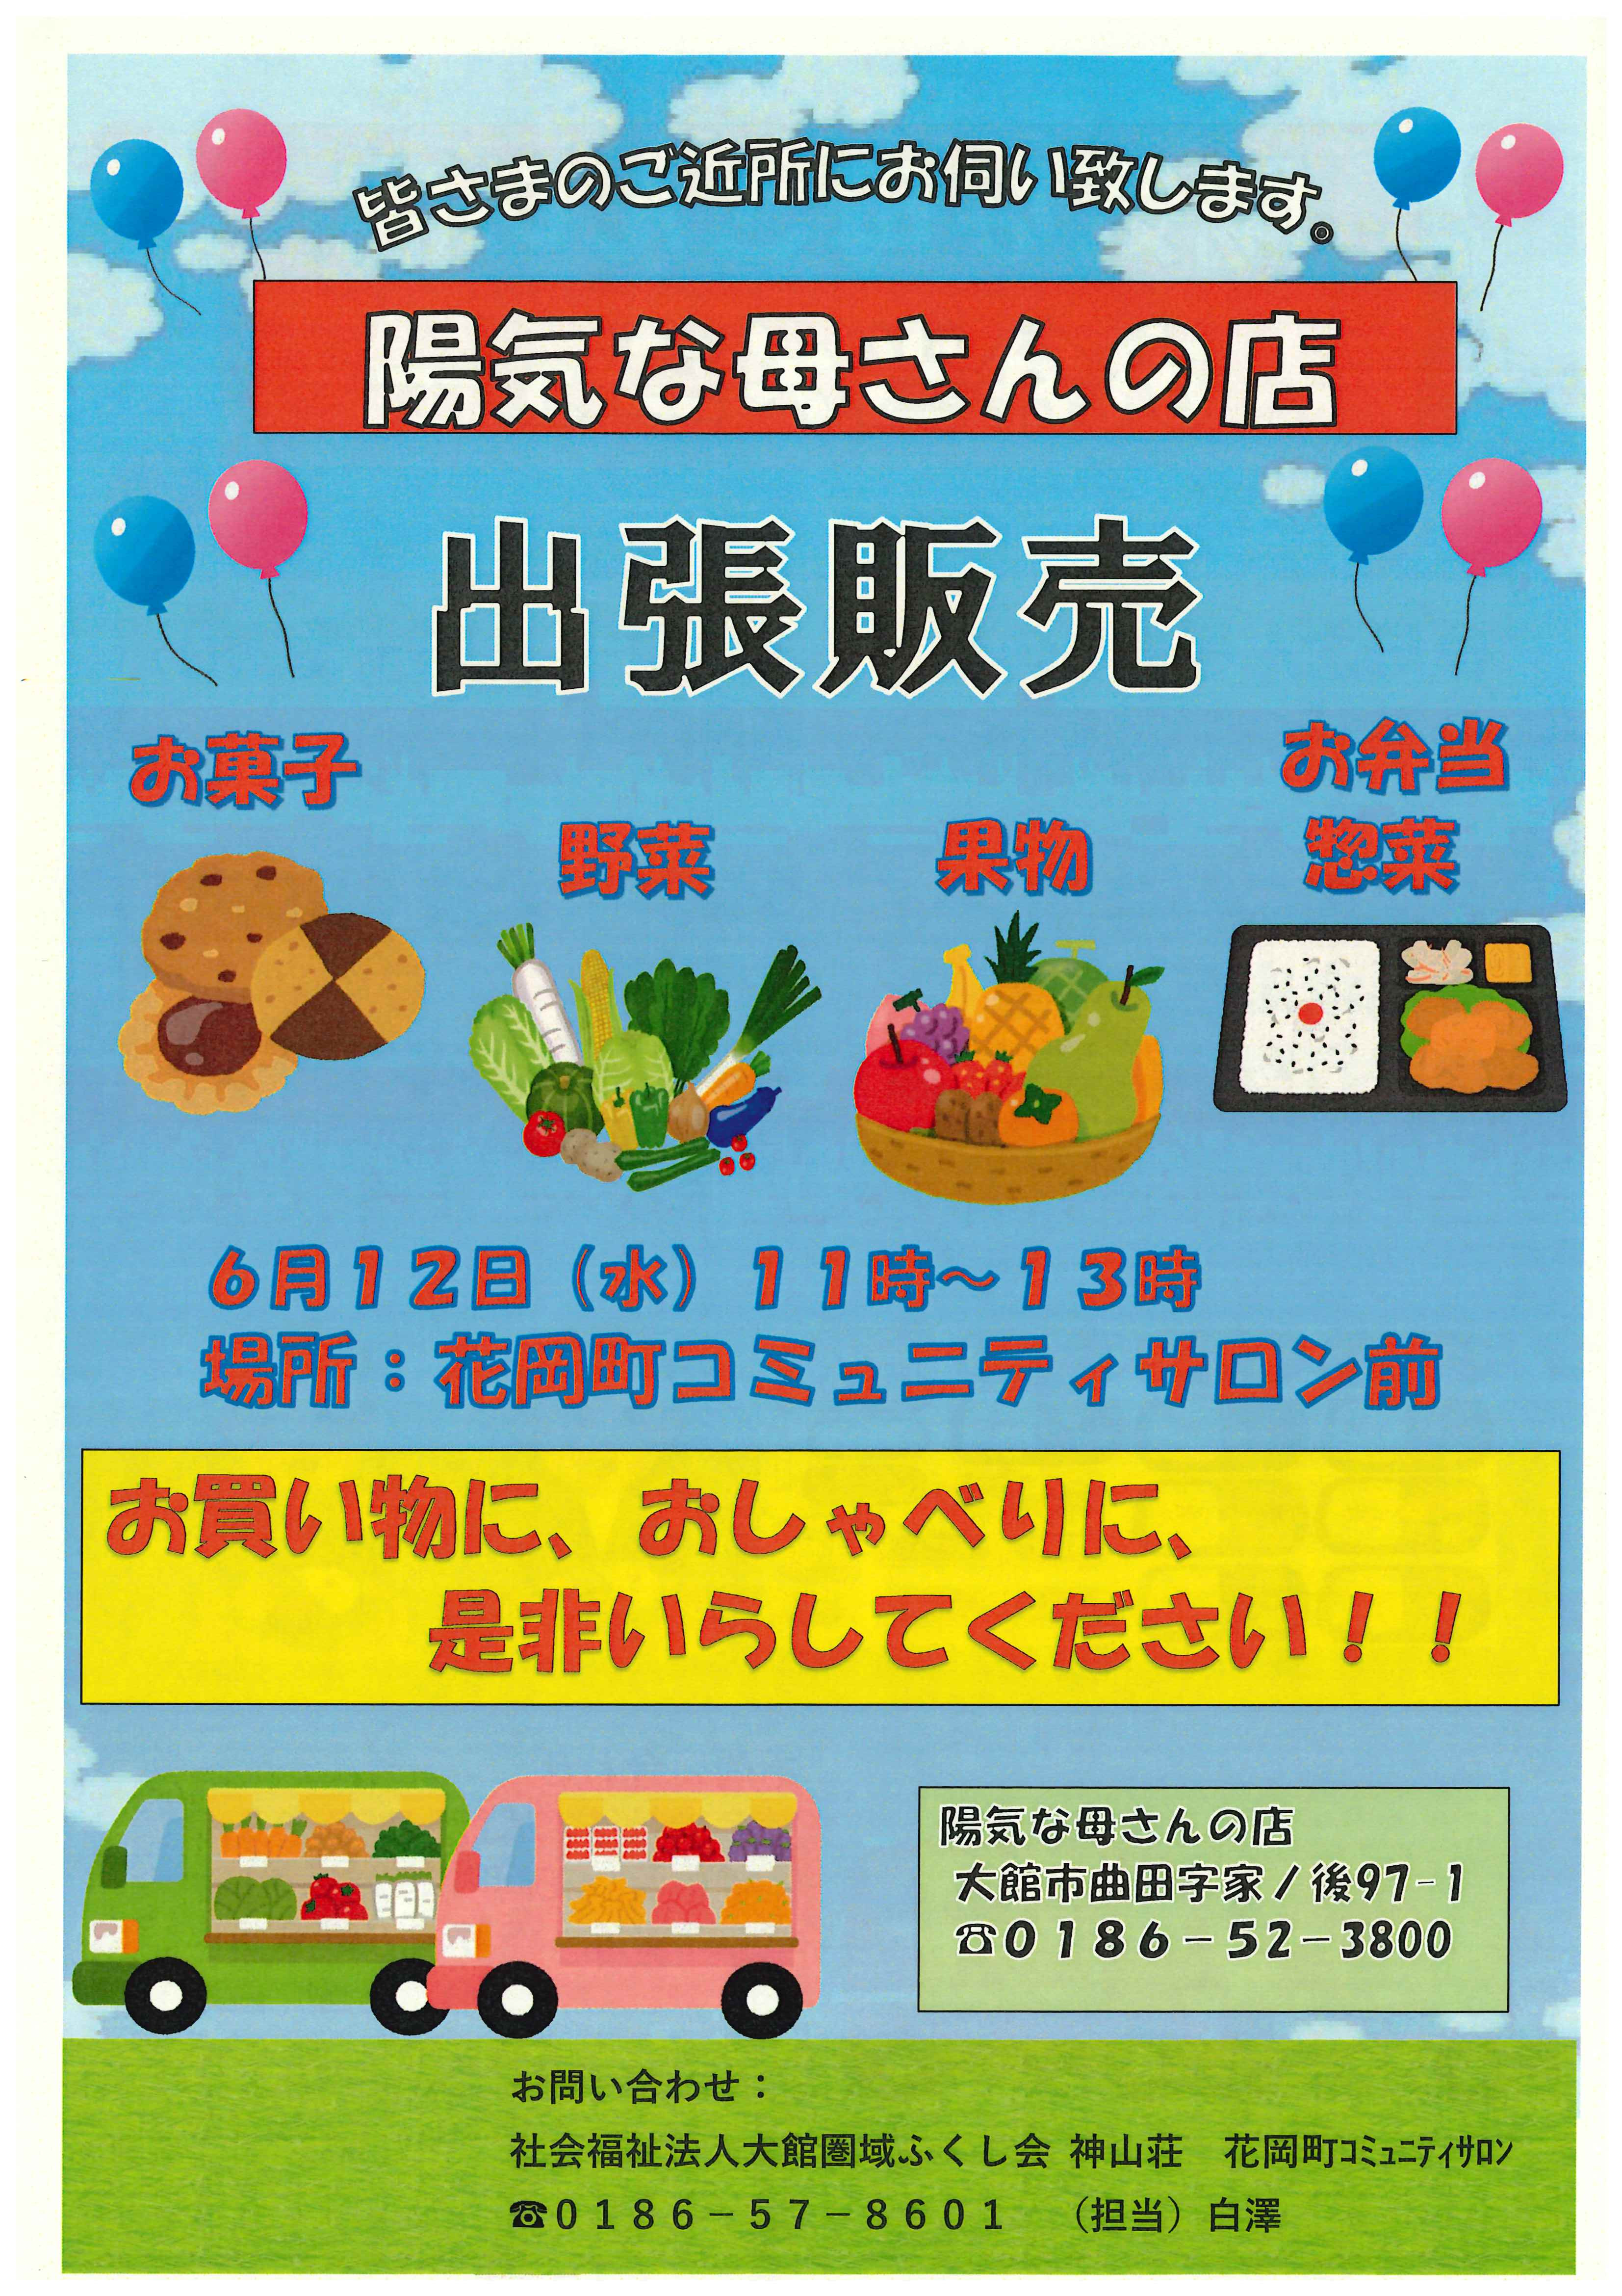 【地域情報】陽気な母さんの店「出張販売」が花岡地区で開催されます